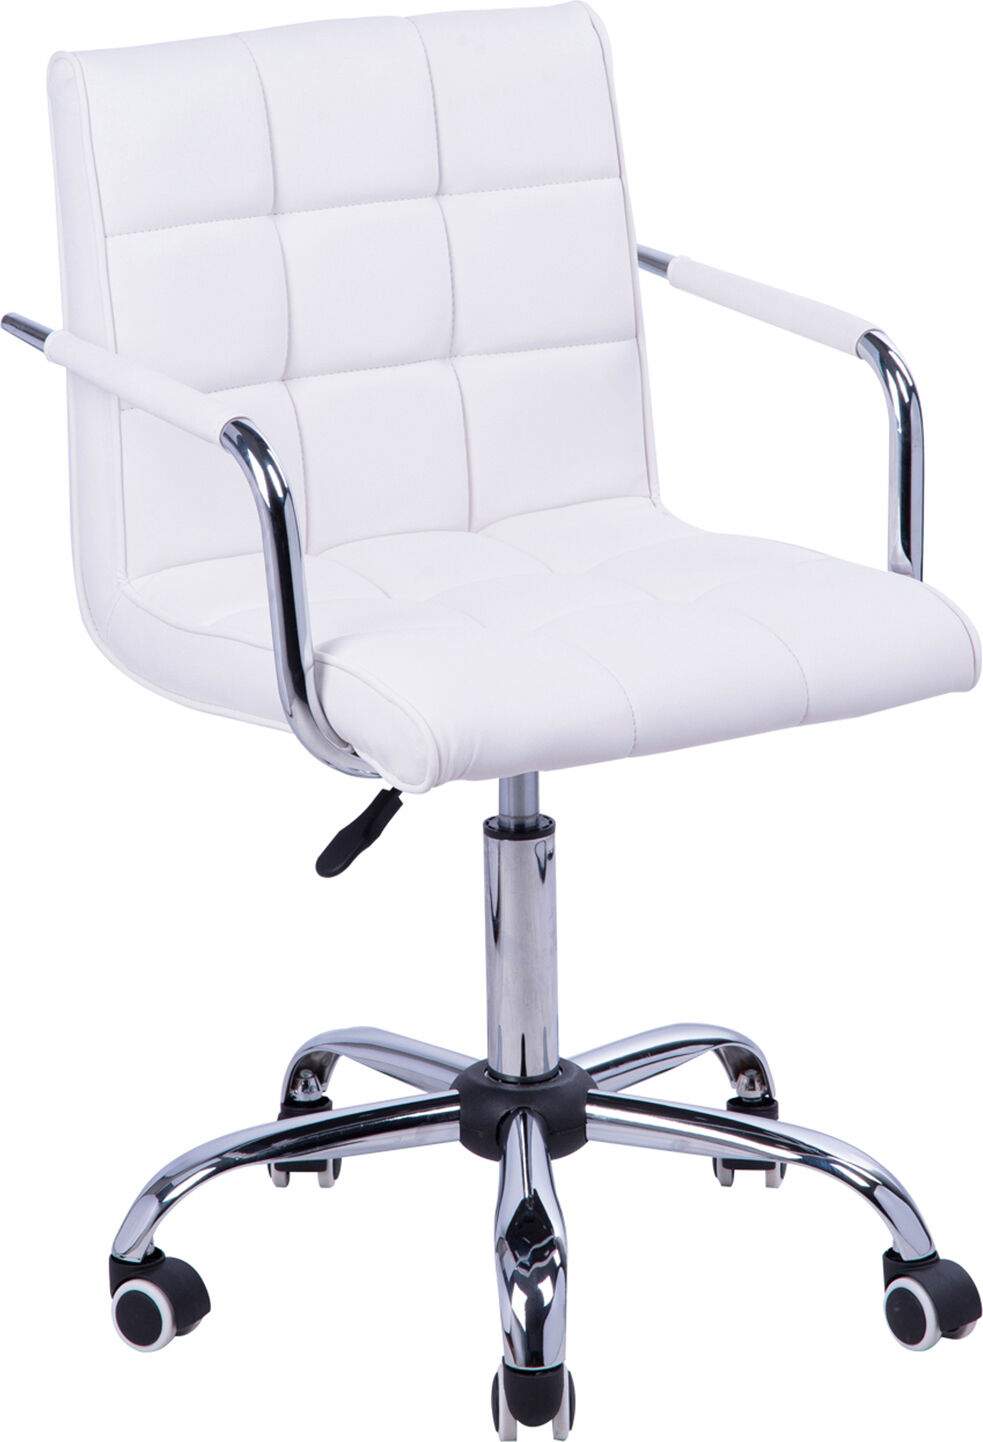 dechome d0701 sedia ergonomica ufficio sedia da scrivania operativa con rotelle e braccioli girevole e regolabile in altezza colore nero - d0701